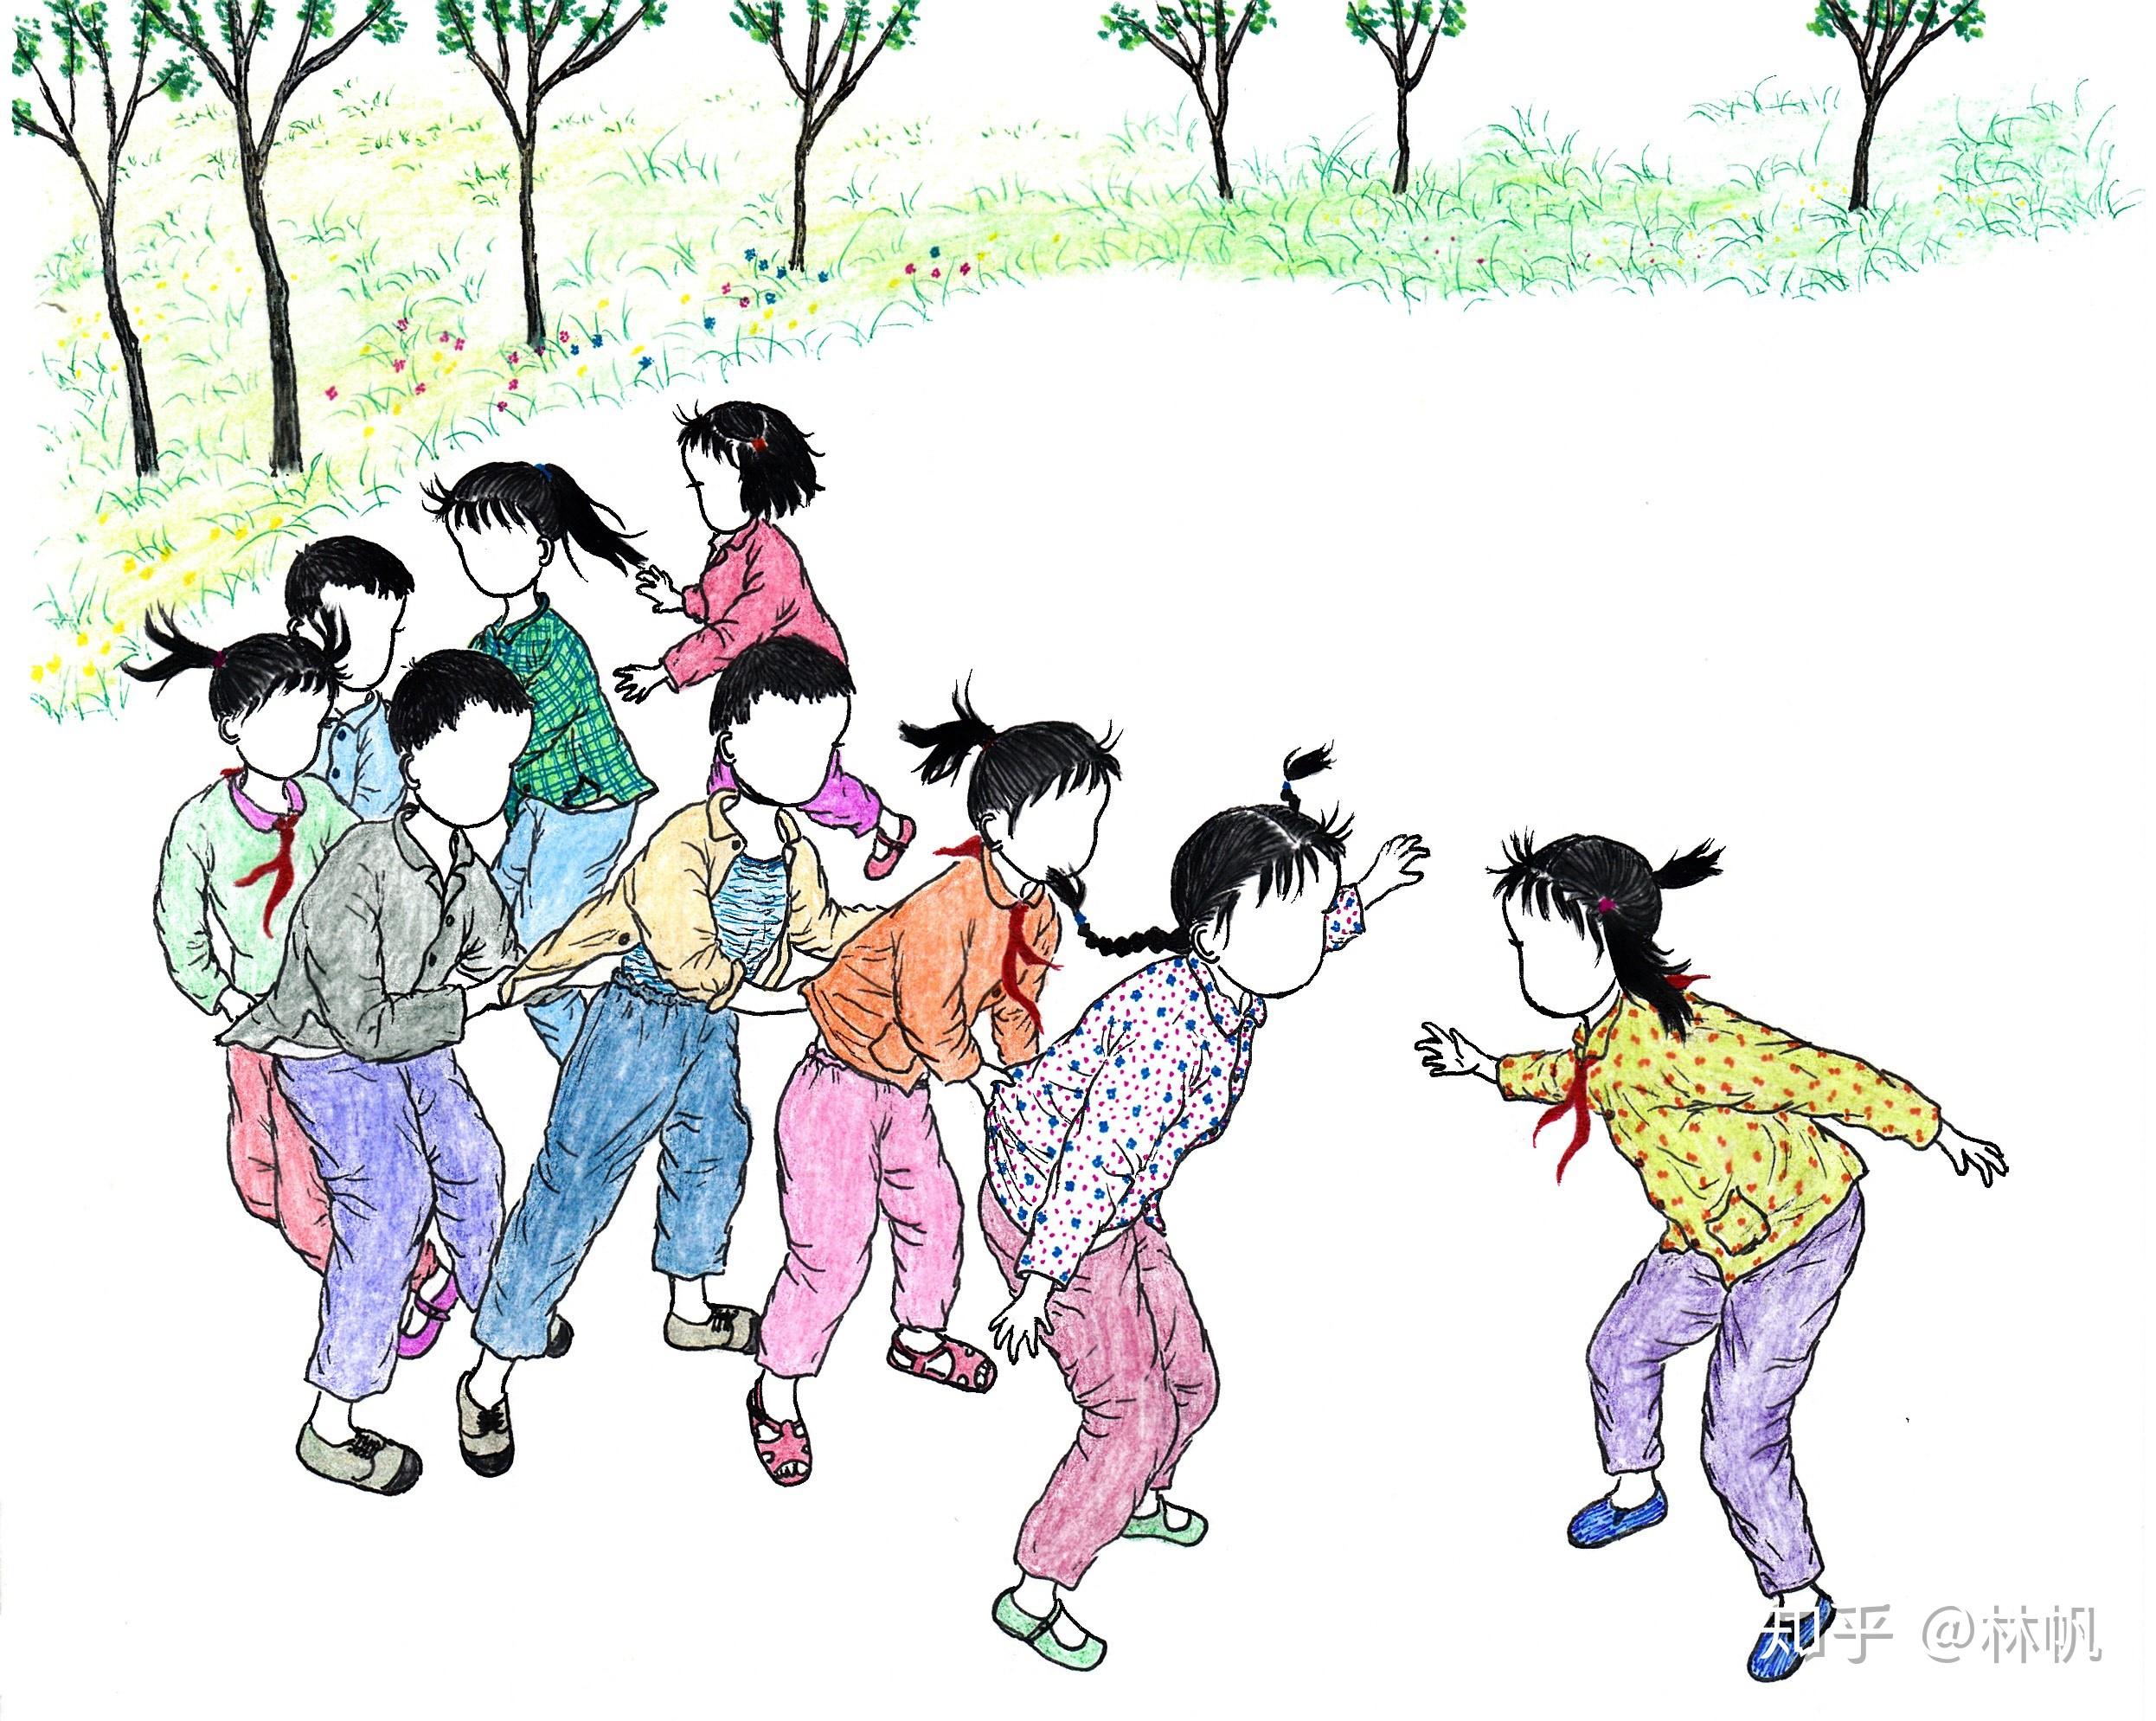 直击上世纪八十年代的中国儿童_孩子